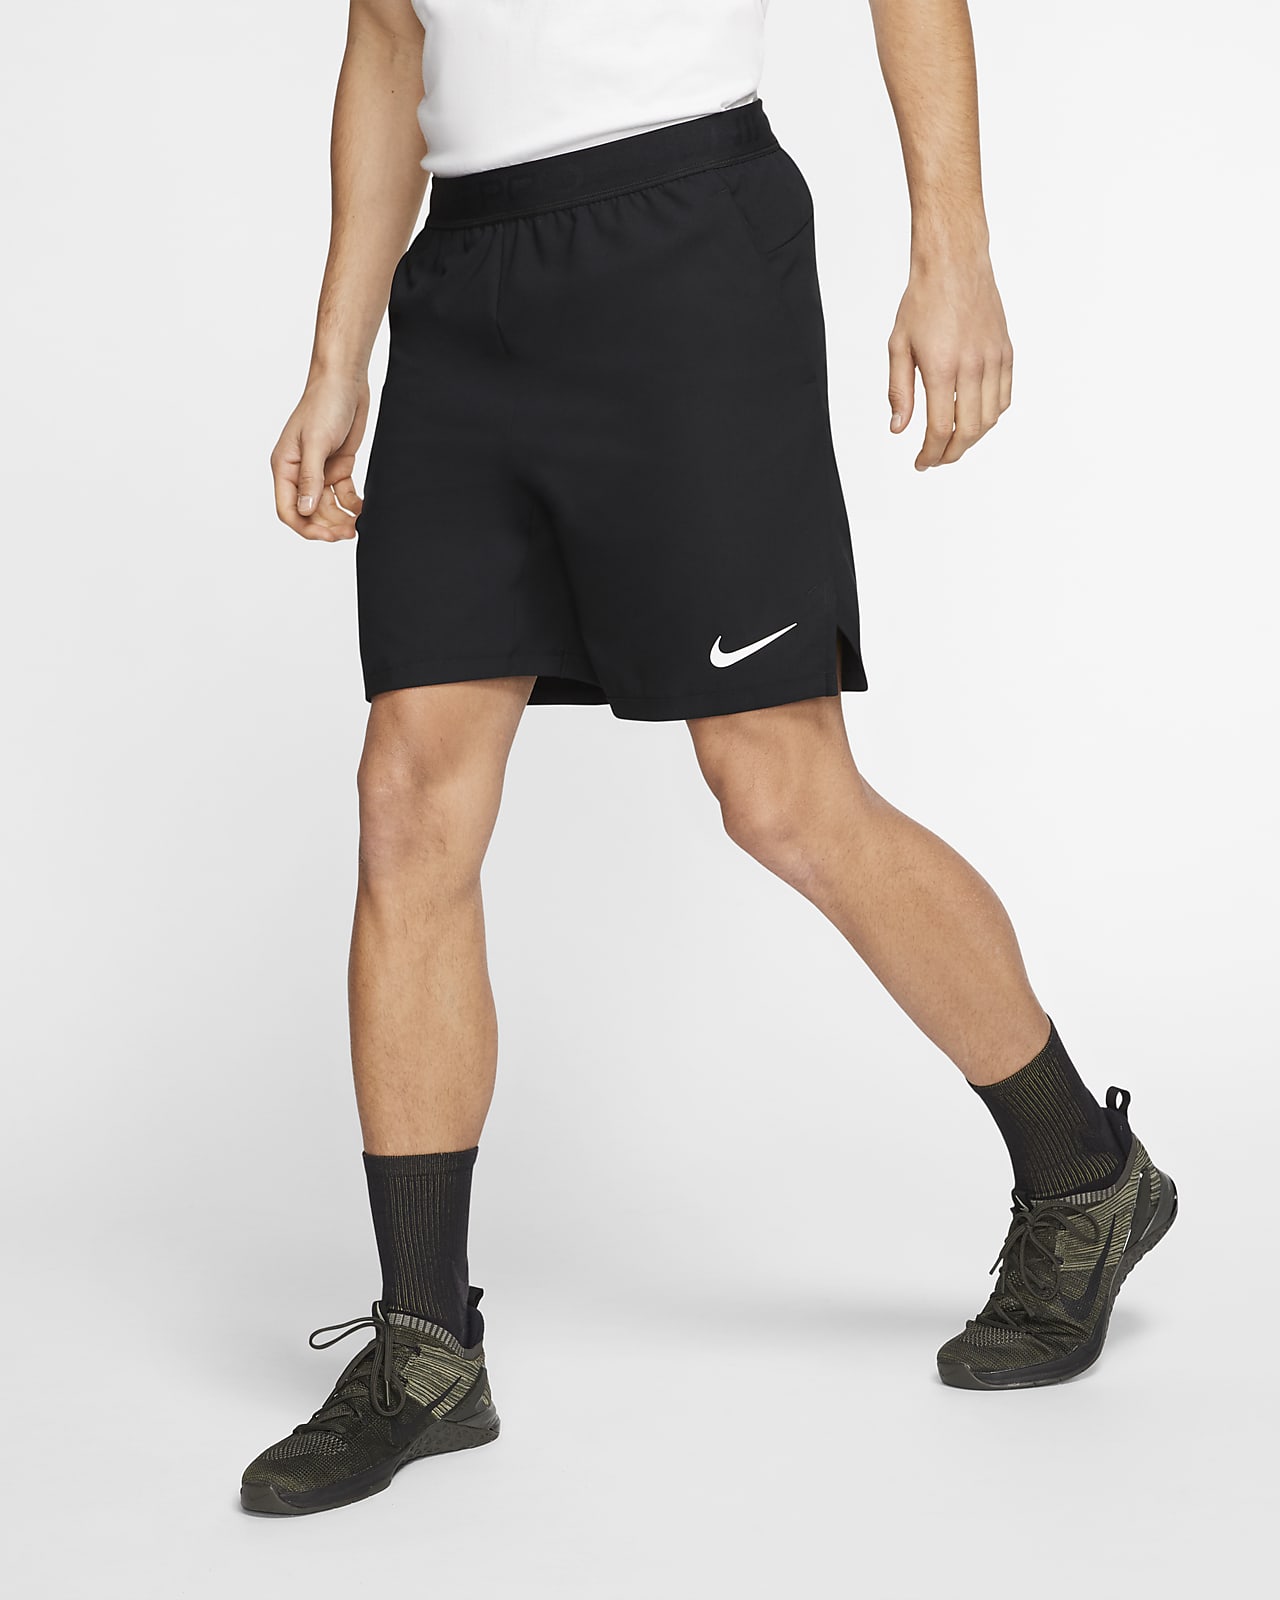 Shorts para hombre Nike Pro Flex Vent Max. Nike.com